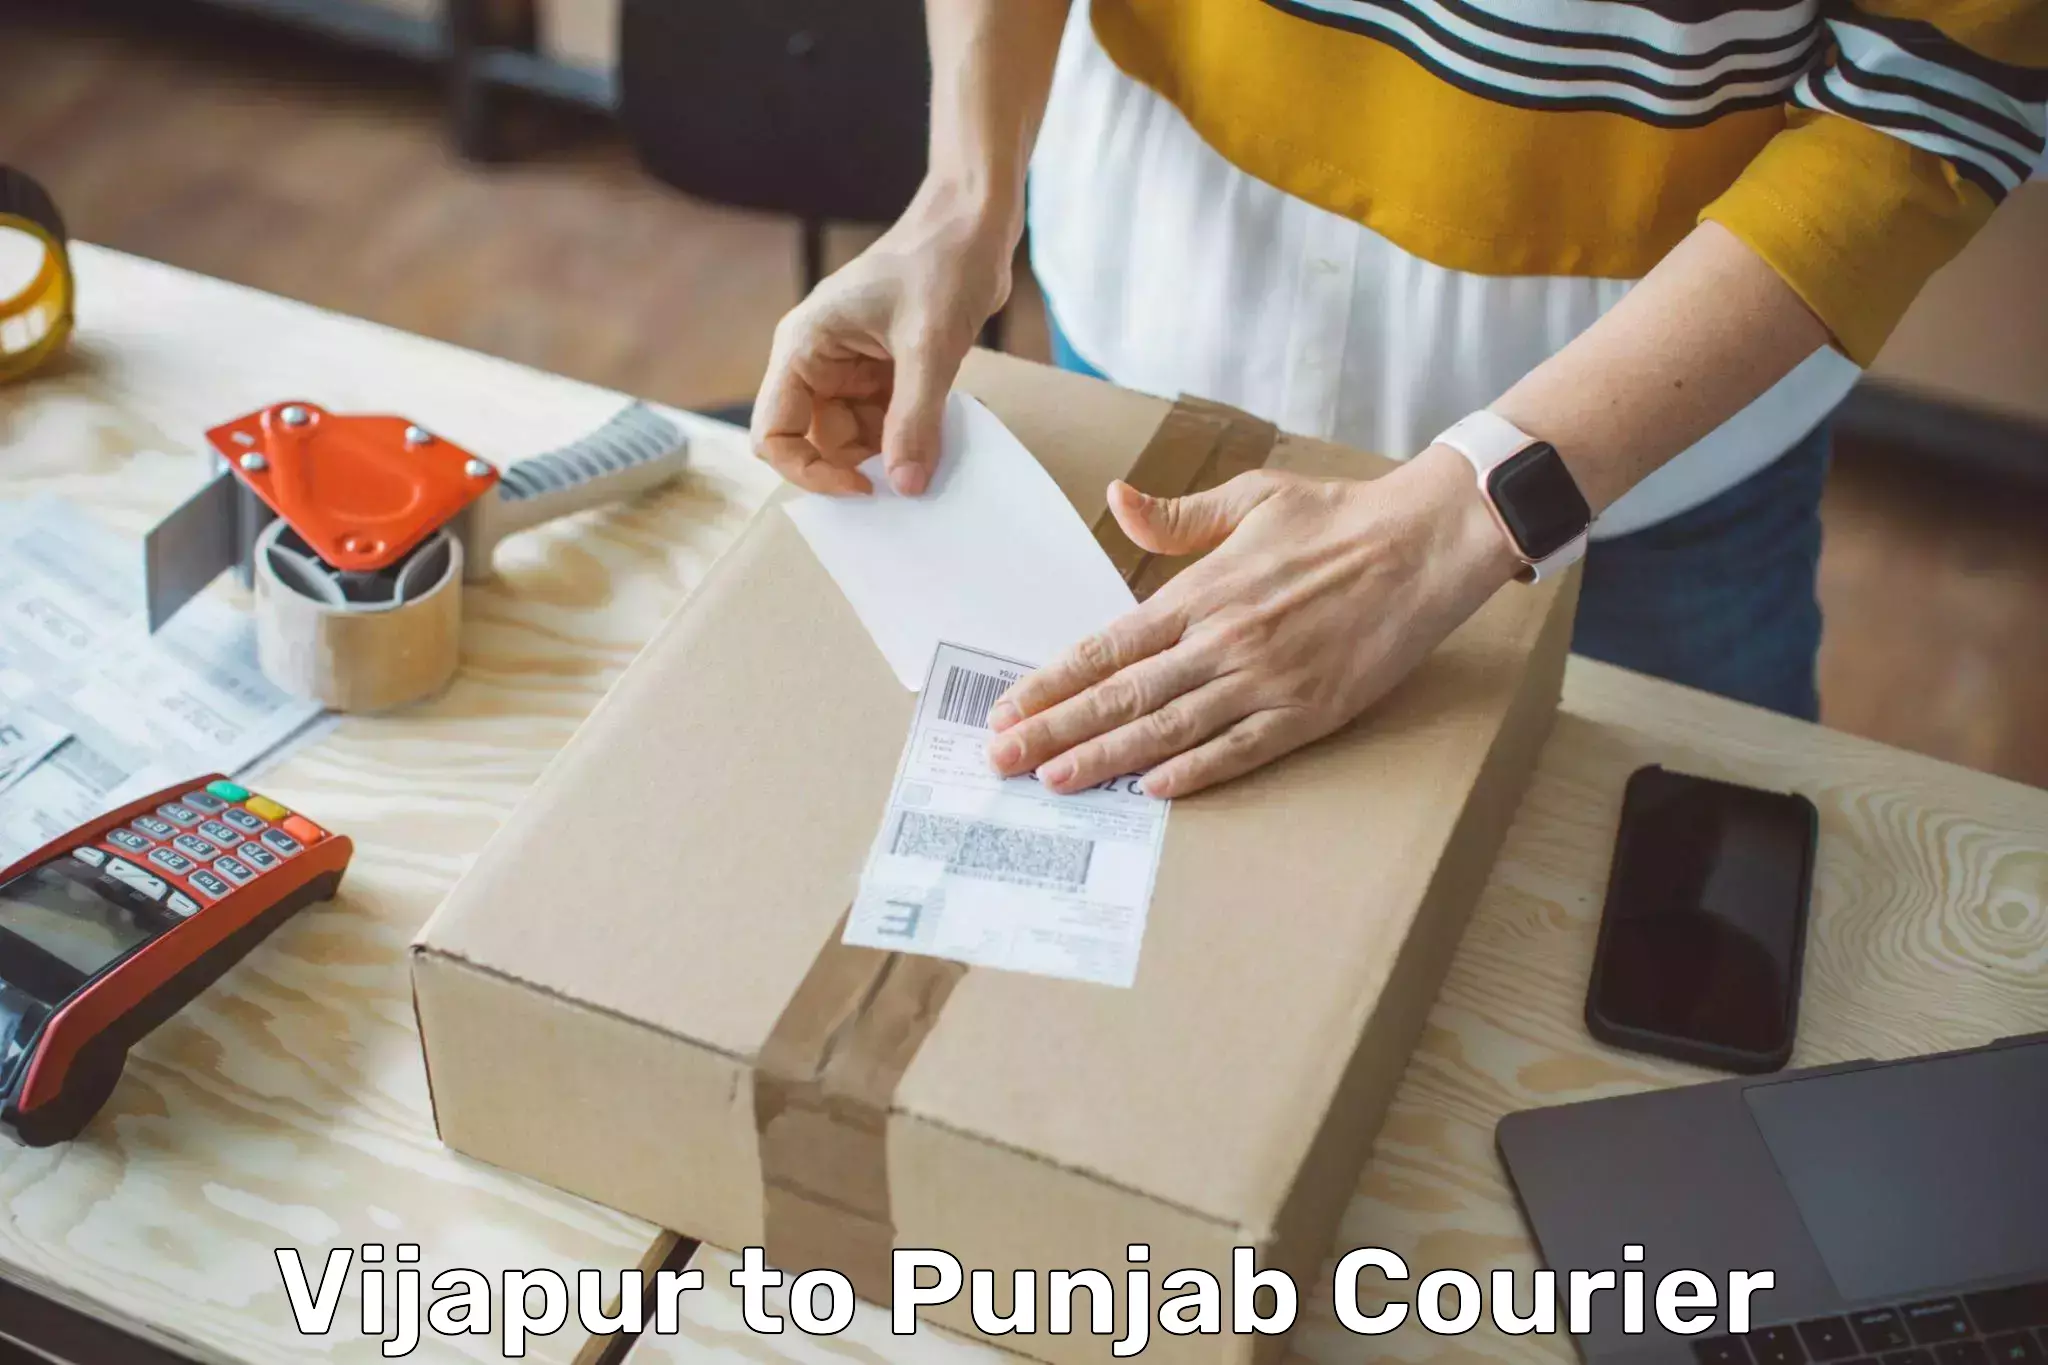 Quick dispatch service Vijapur to Punjab